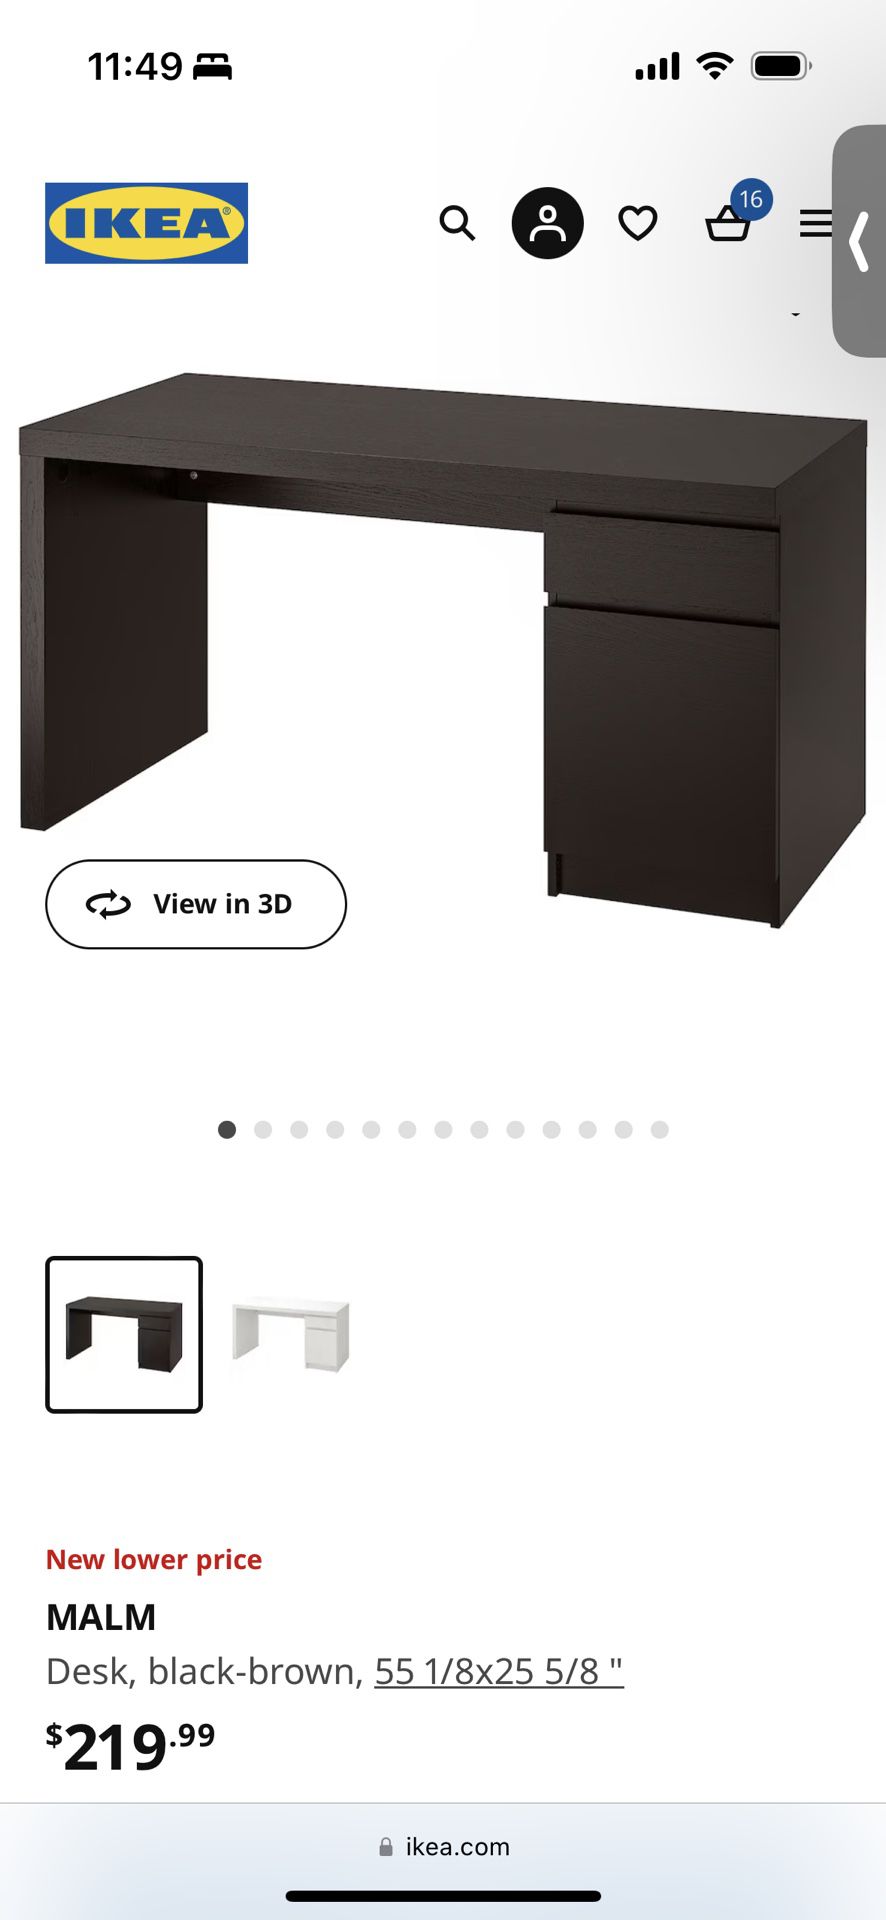 $50 IKEA MALM Desk Black Brown, 55 1/8x25 5/8 "